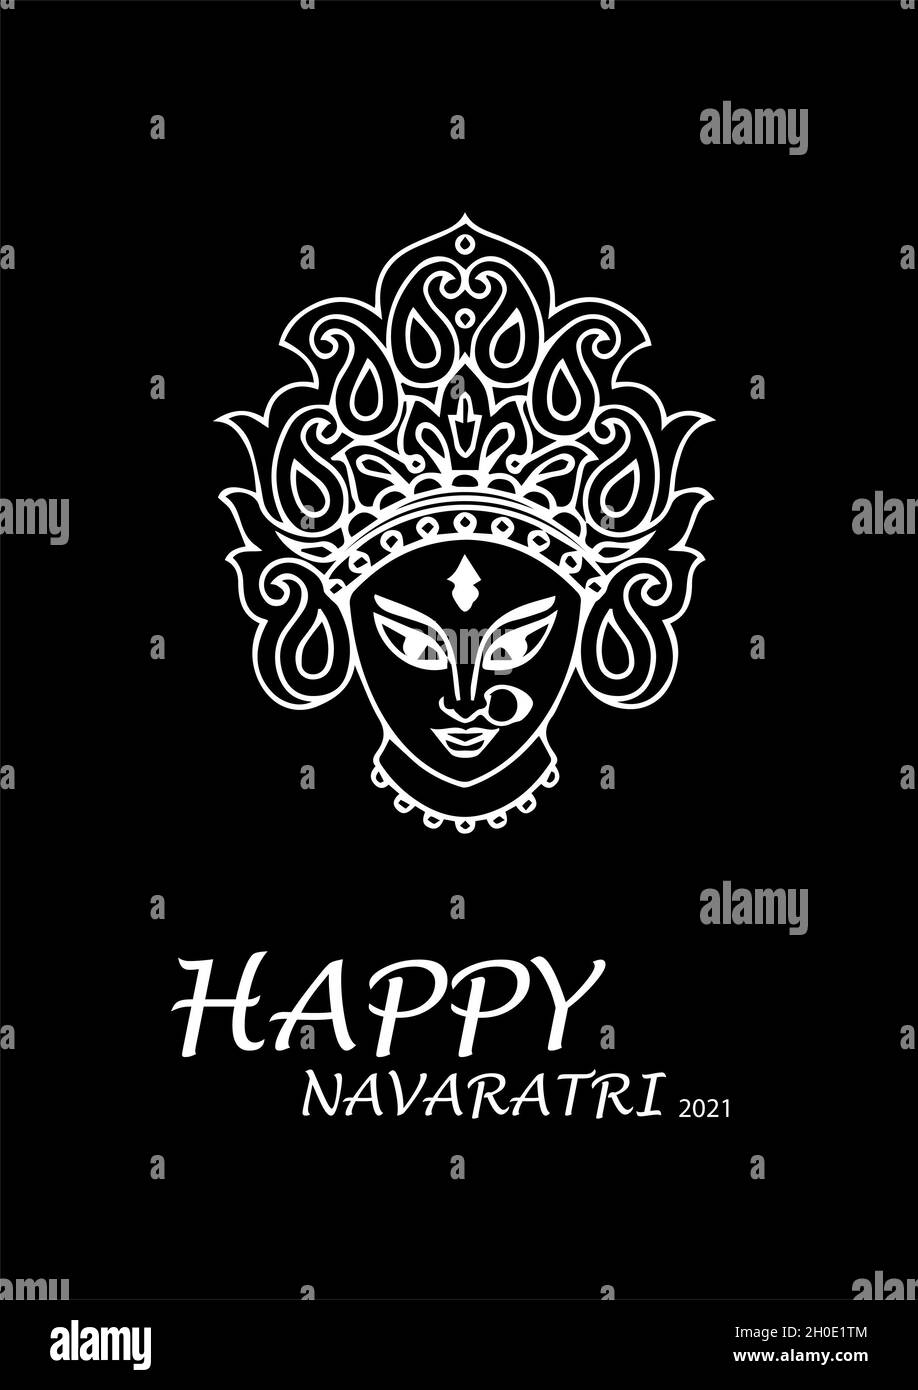 Happy Navaratri 2021, Happy Navaratri die besten Wünsche, indische Festfeier Stockfoto